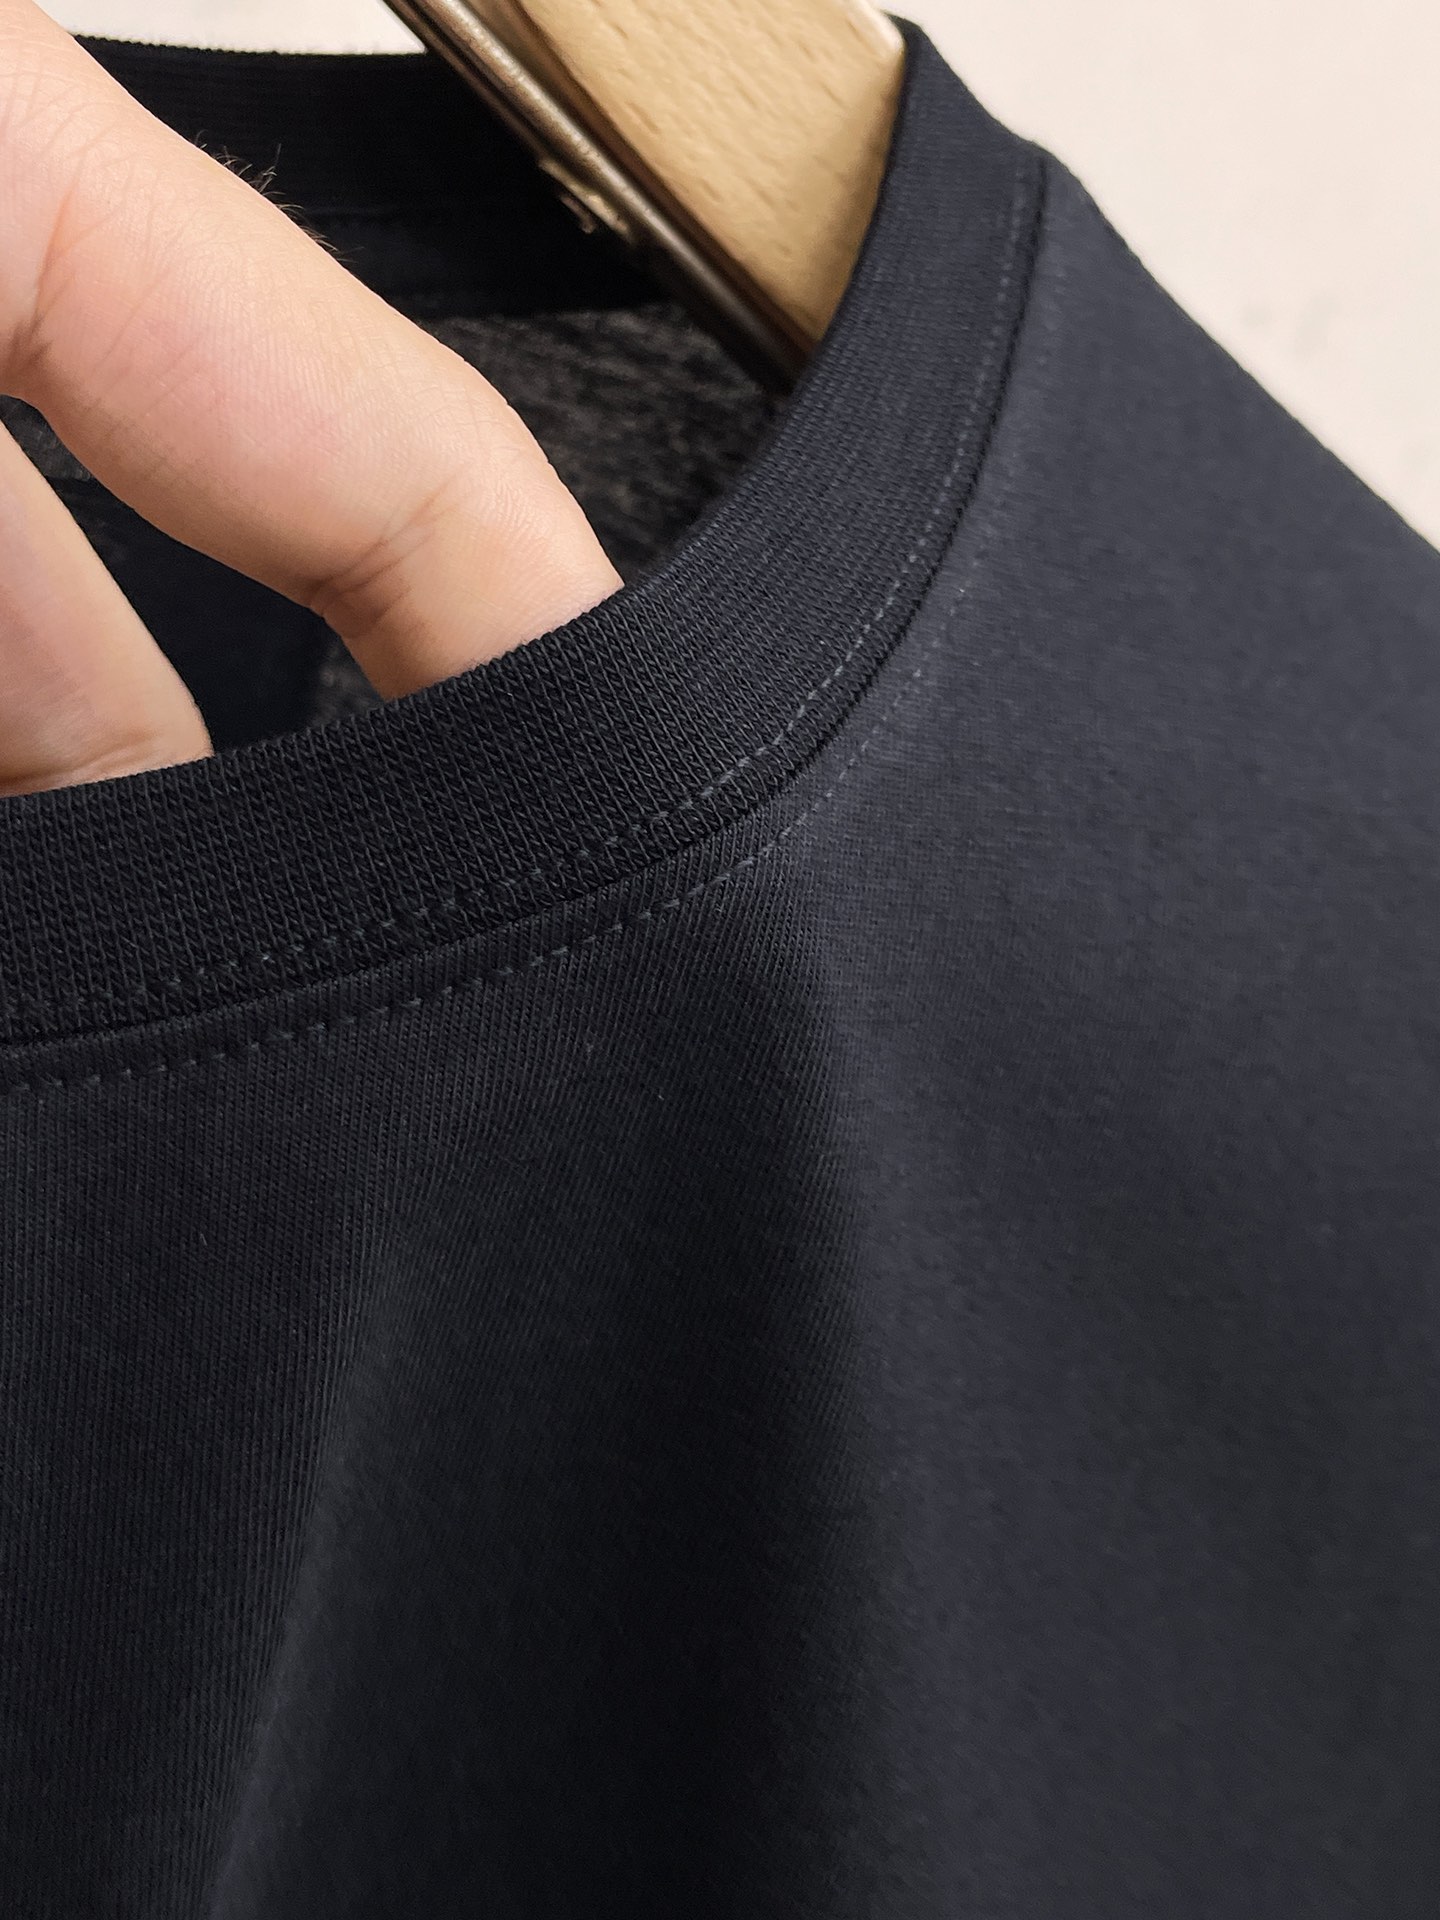 L牌*最新最顶级版本圆领短袖最顶级的品质.顶级制作工艺进口面料专柜款独特设计采用进口高端订制进口丝线手感